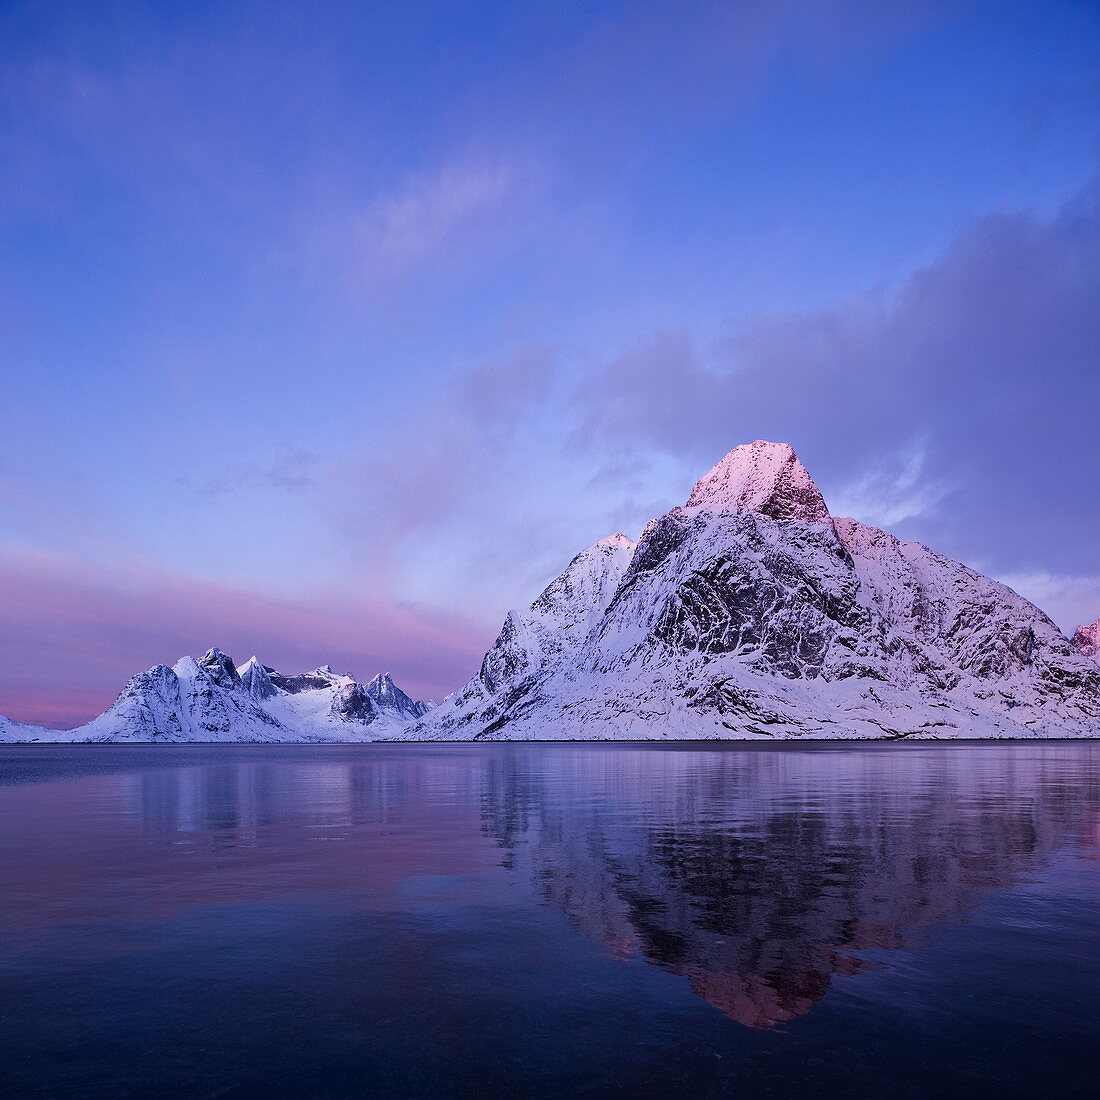 Reflection of winter mountain peaks in Kjerkefjord, Reine, Moskenesøy, Lofoten islands, Norway